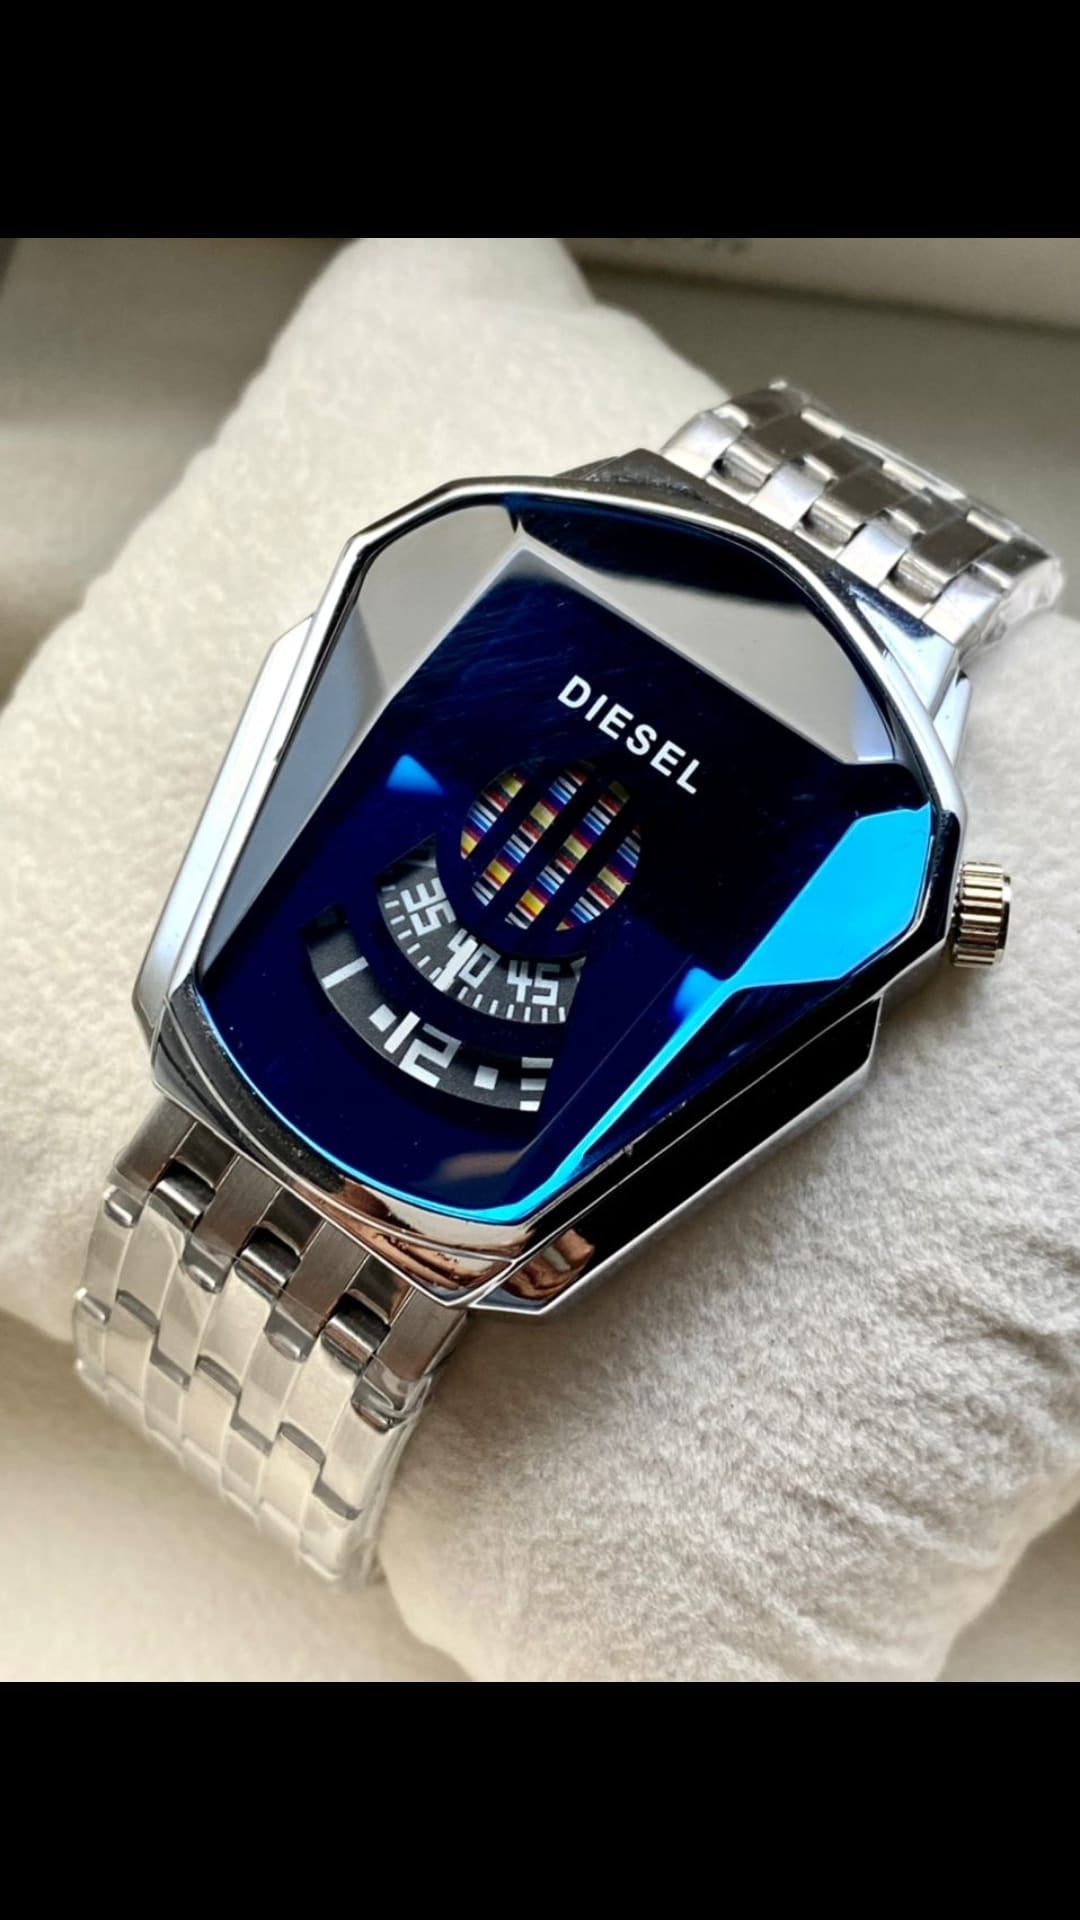 New model diesel watch